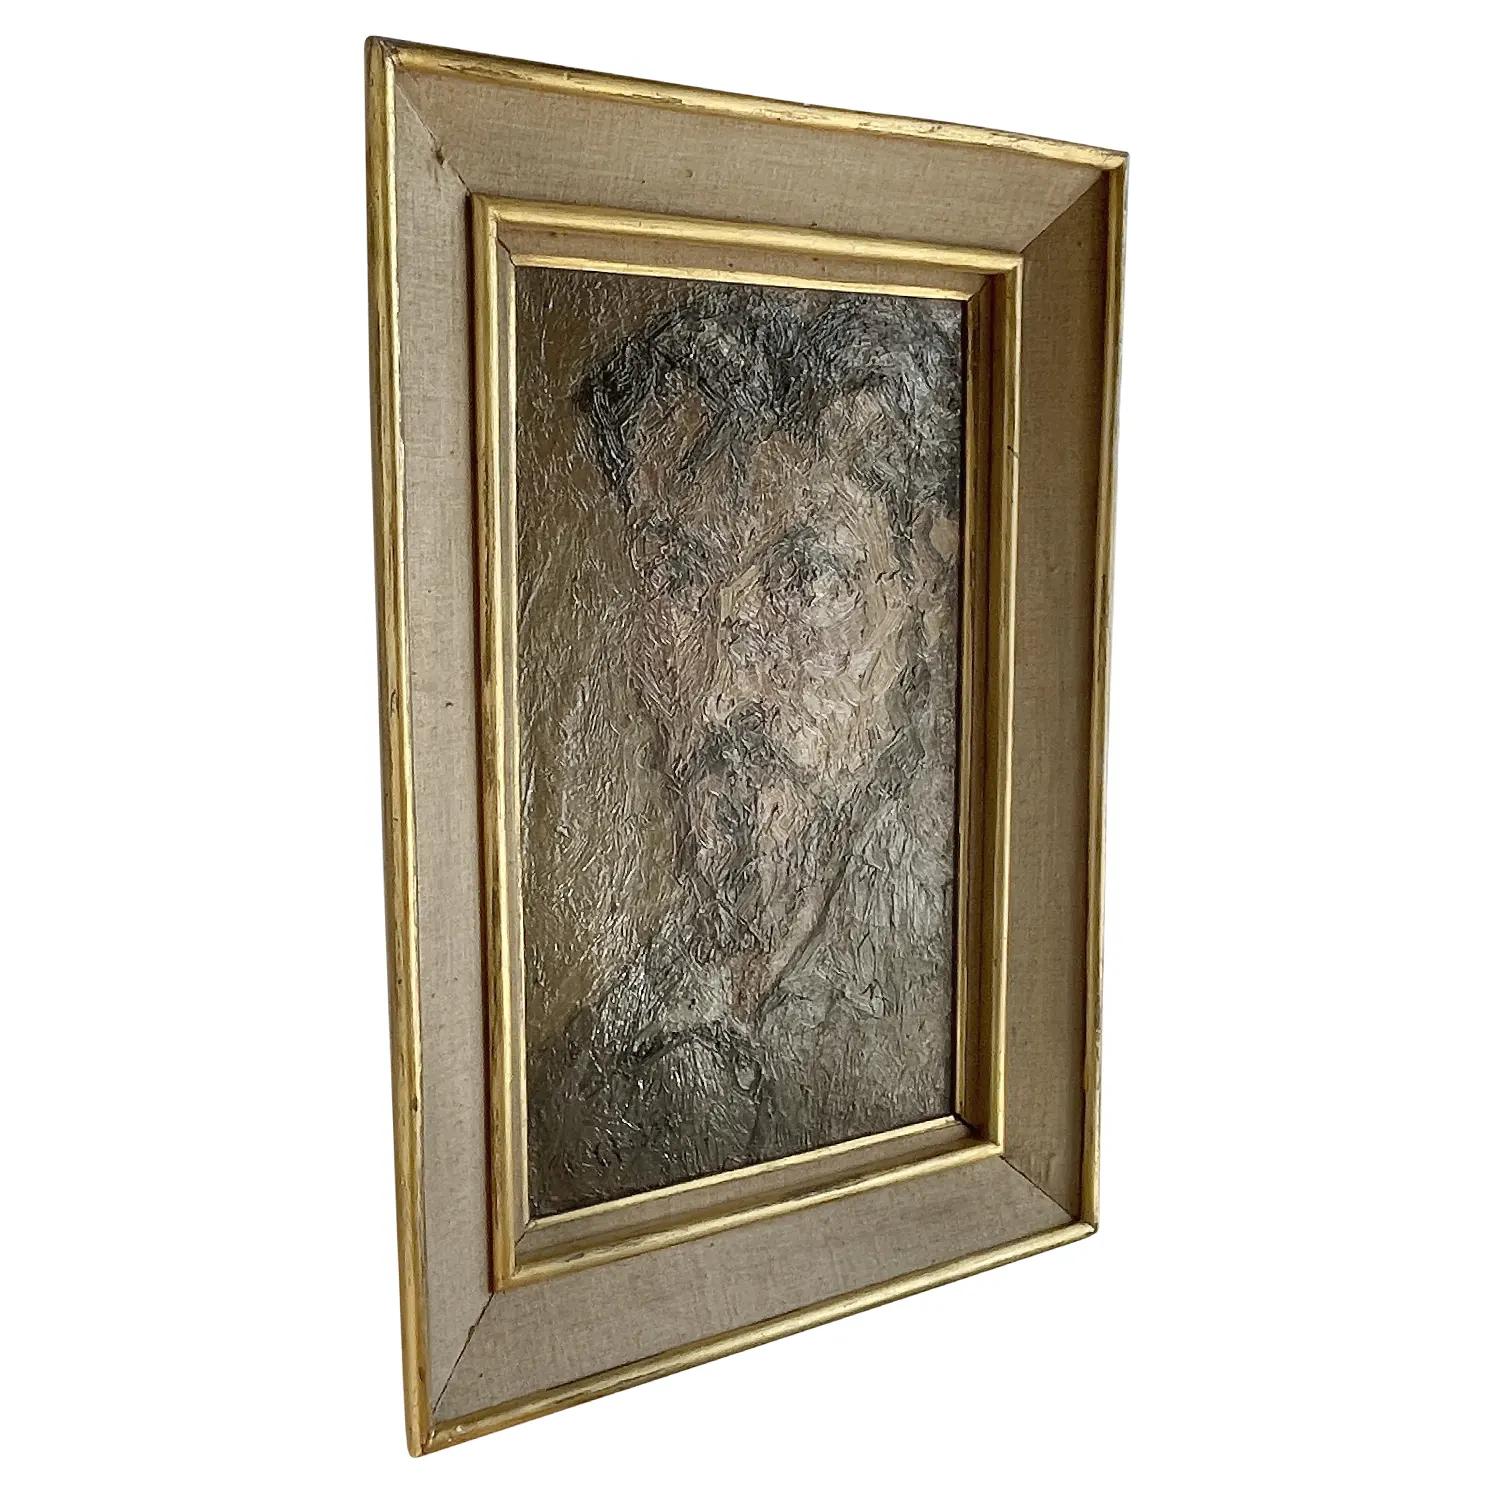 Un autoportrait français vintage gris foncé, vert, de Daniel Clesse, dans un cadre en bois doré, en bonne condition. Signé en bas à droite. Usure conforme à l'âge et à l'utilisation. Daté de 1961, Paris, France.

Sans le cadre : 22